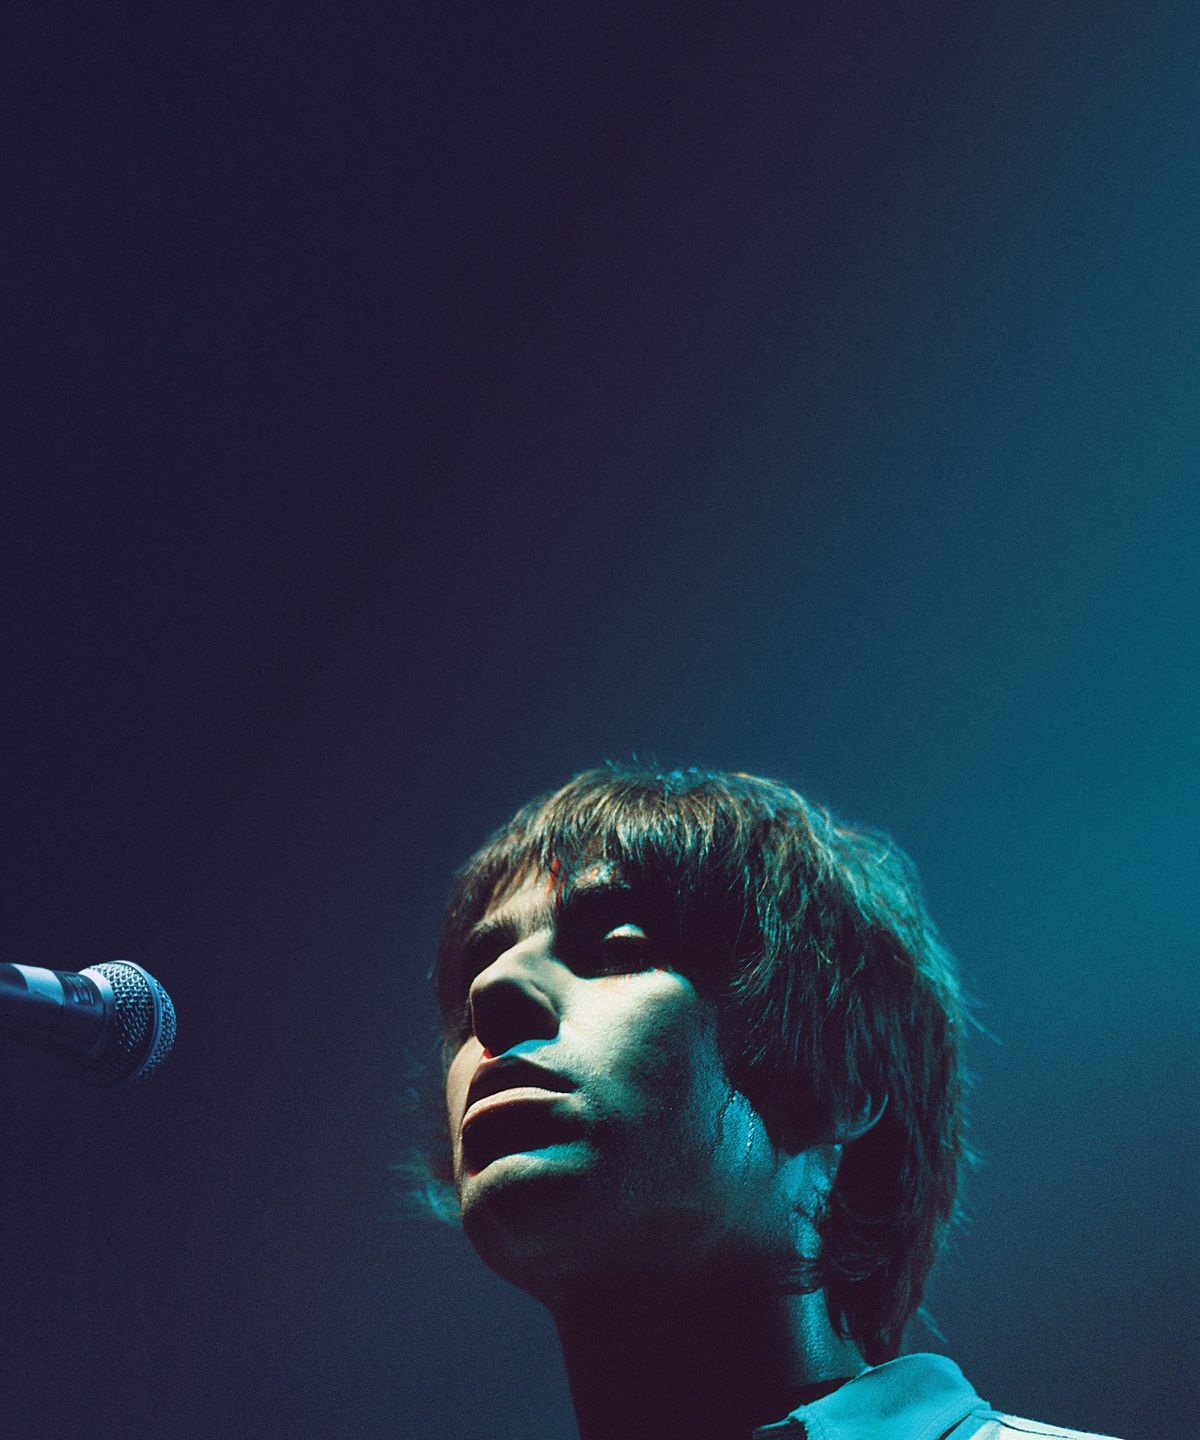 Liam Gallagher - Definitely Maybe